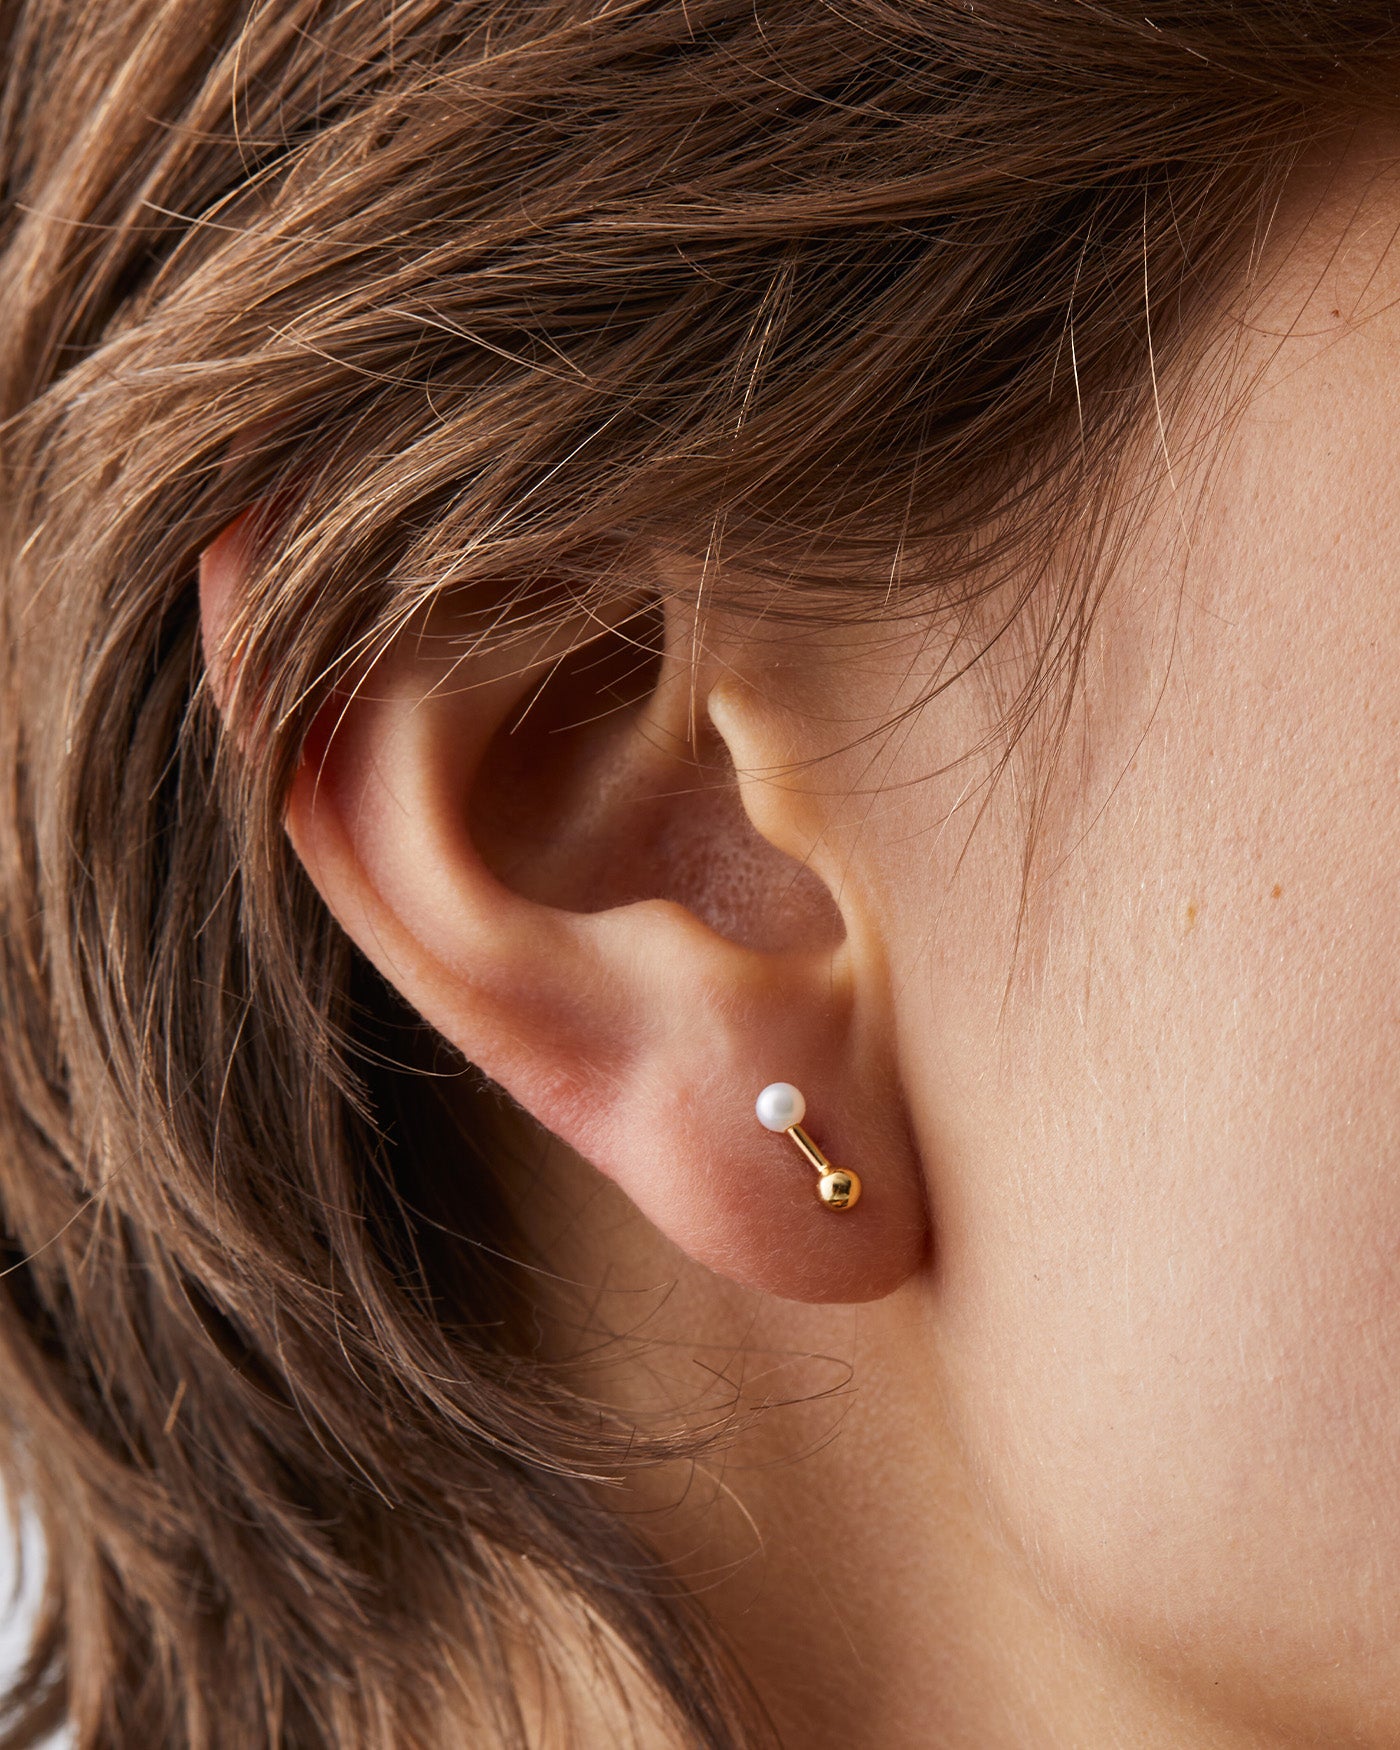 chanel one earring